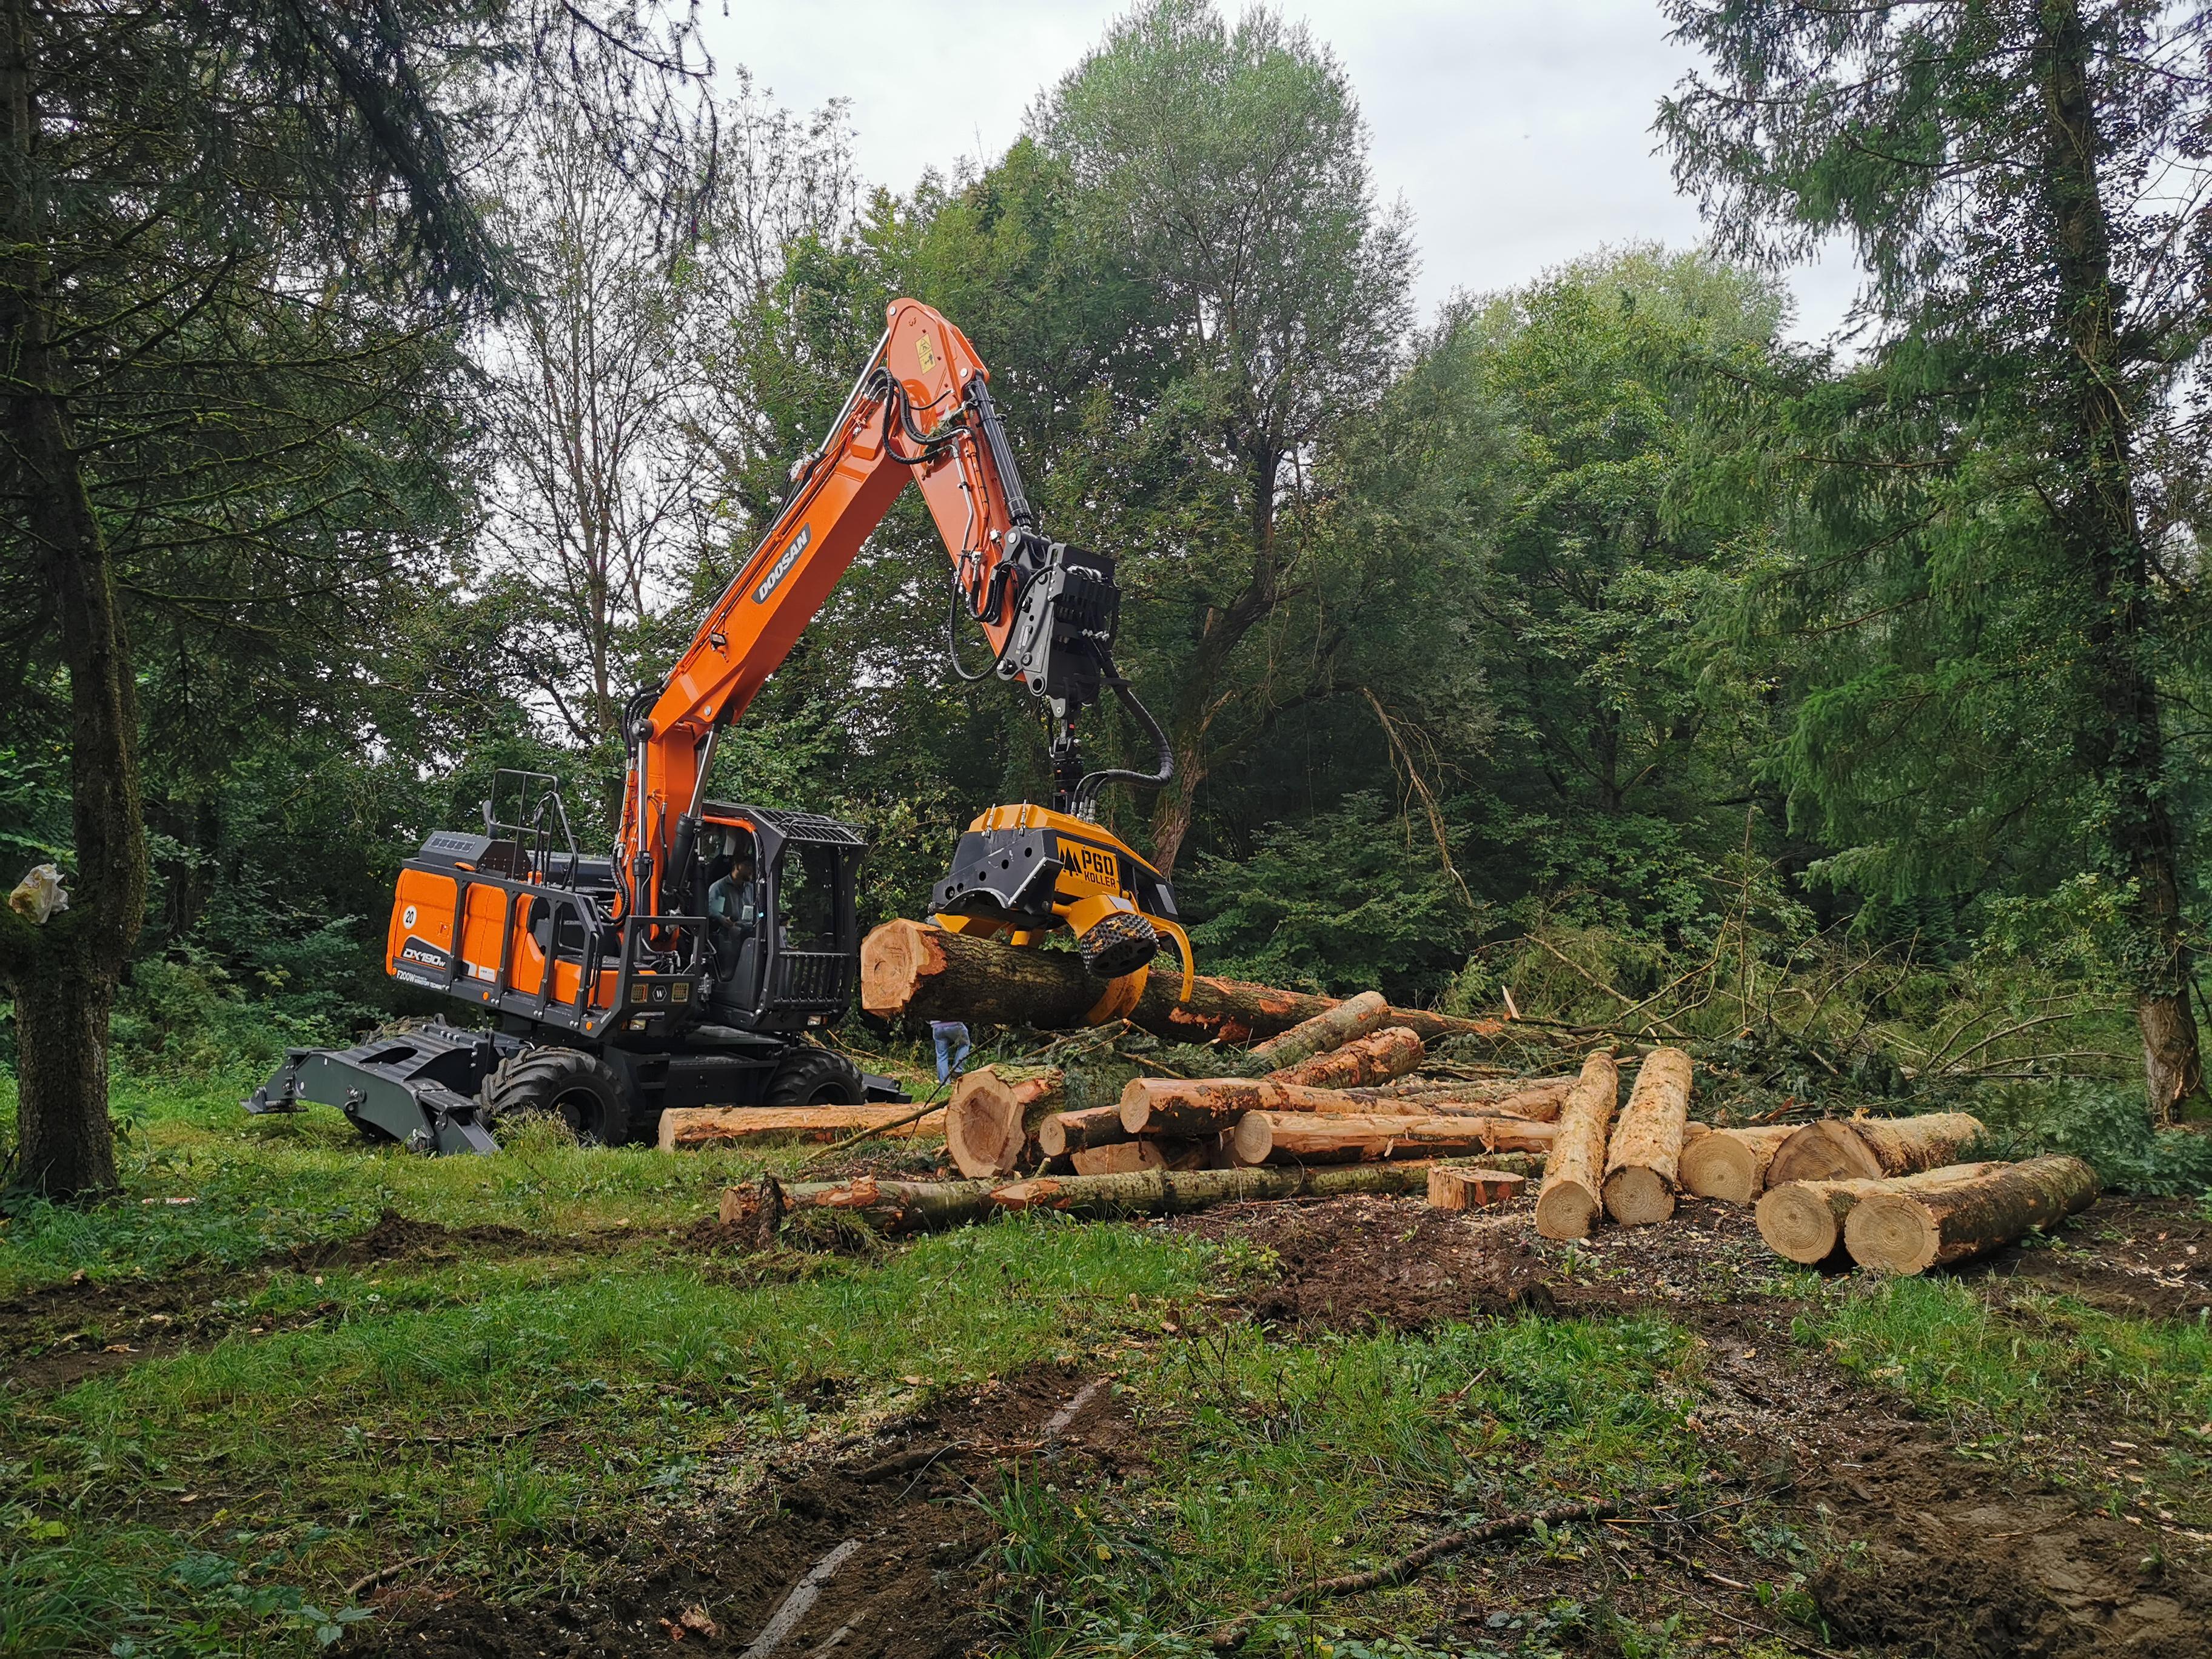 New Doosan Wheeled Excavator Outstanding in Forestry Work